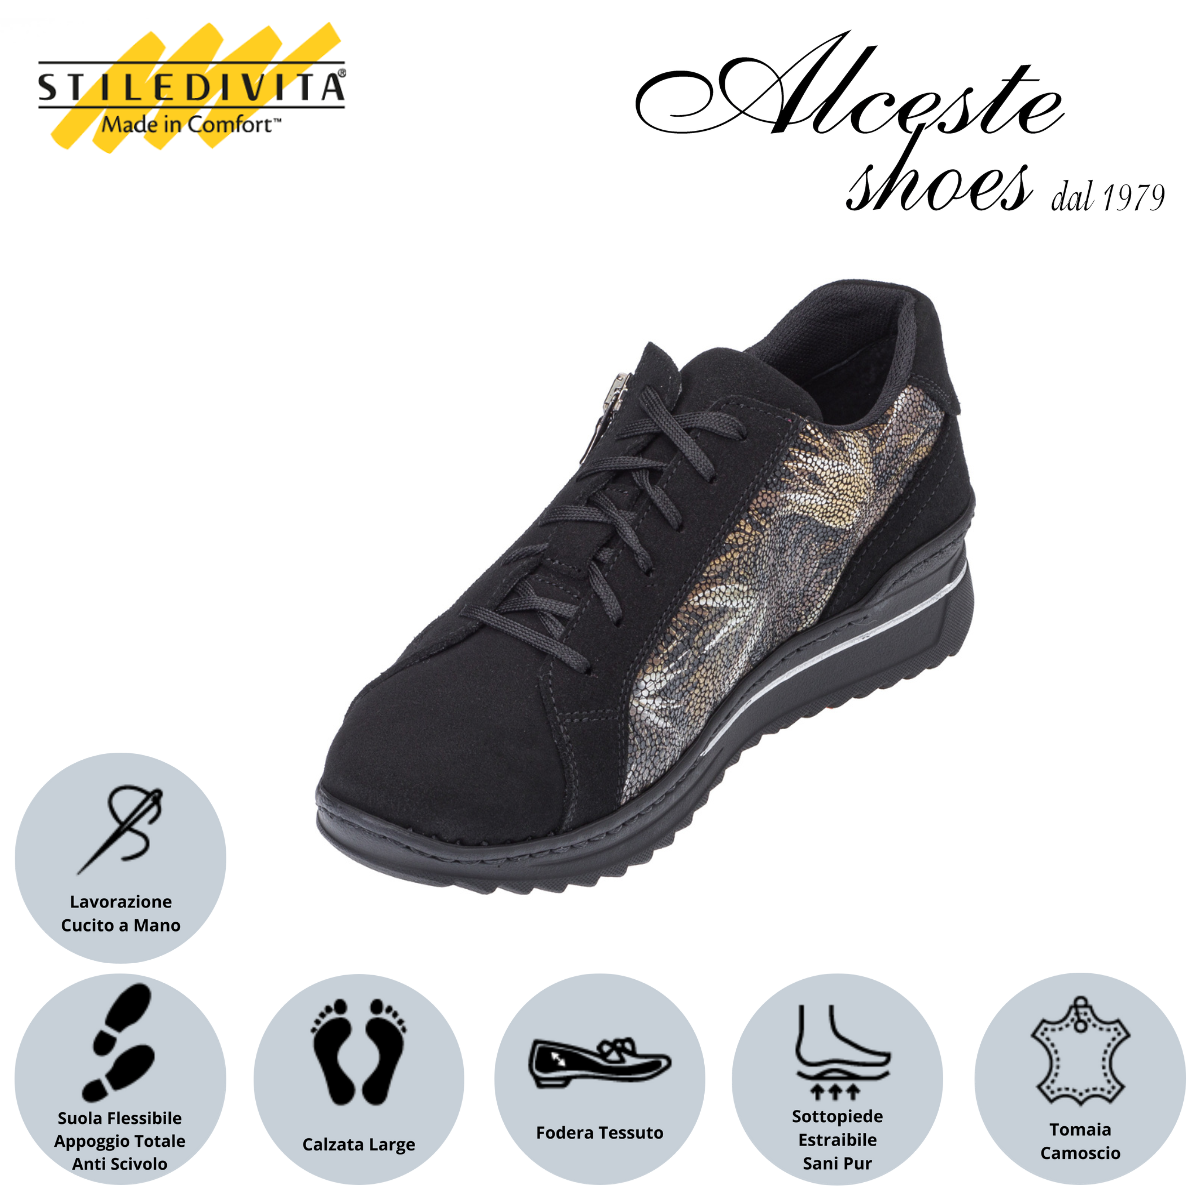 Sneakers Stiledivita Art. 7367 in Camoscio Nero e Camoscio Stampato Alceste Shoes 15